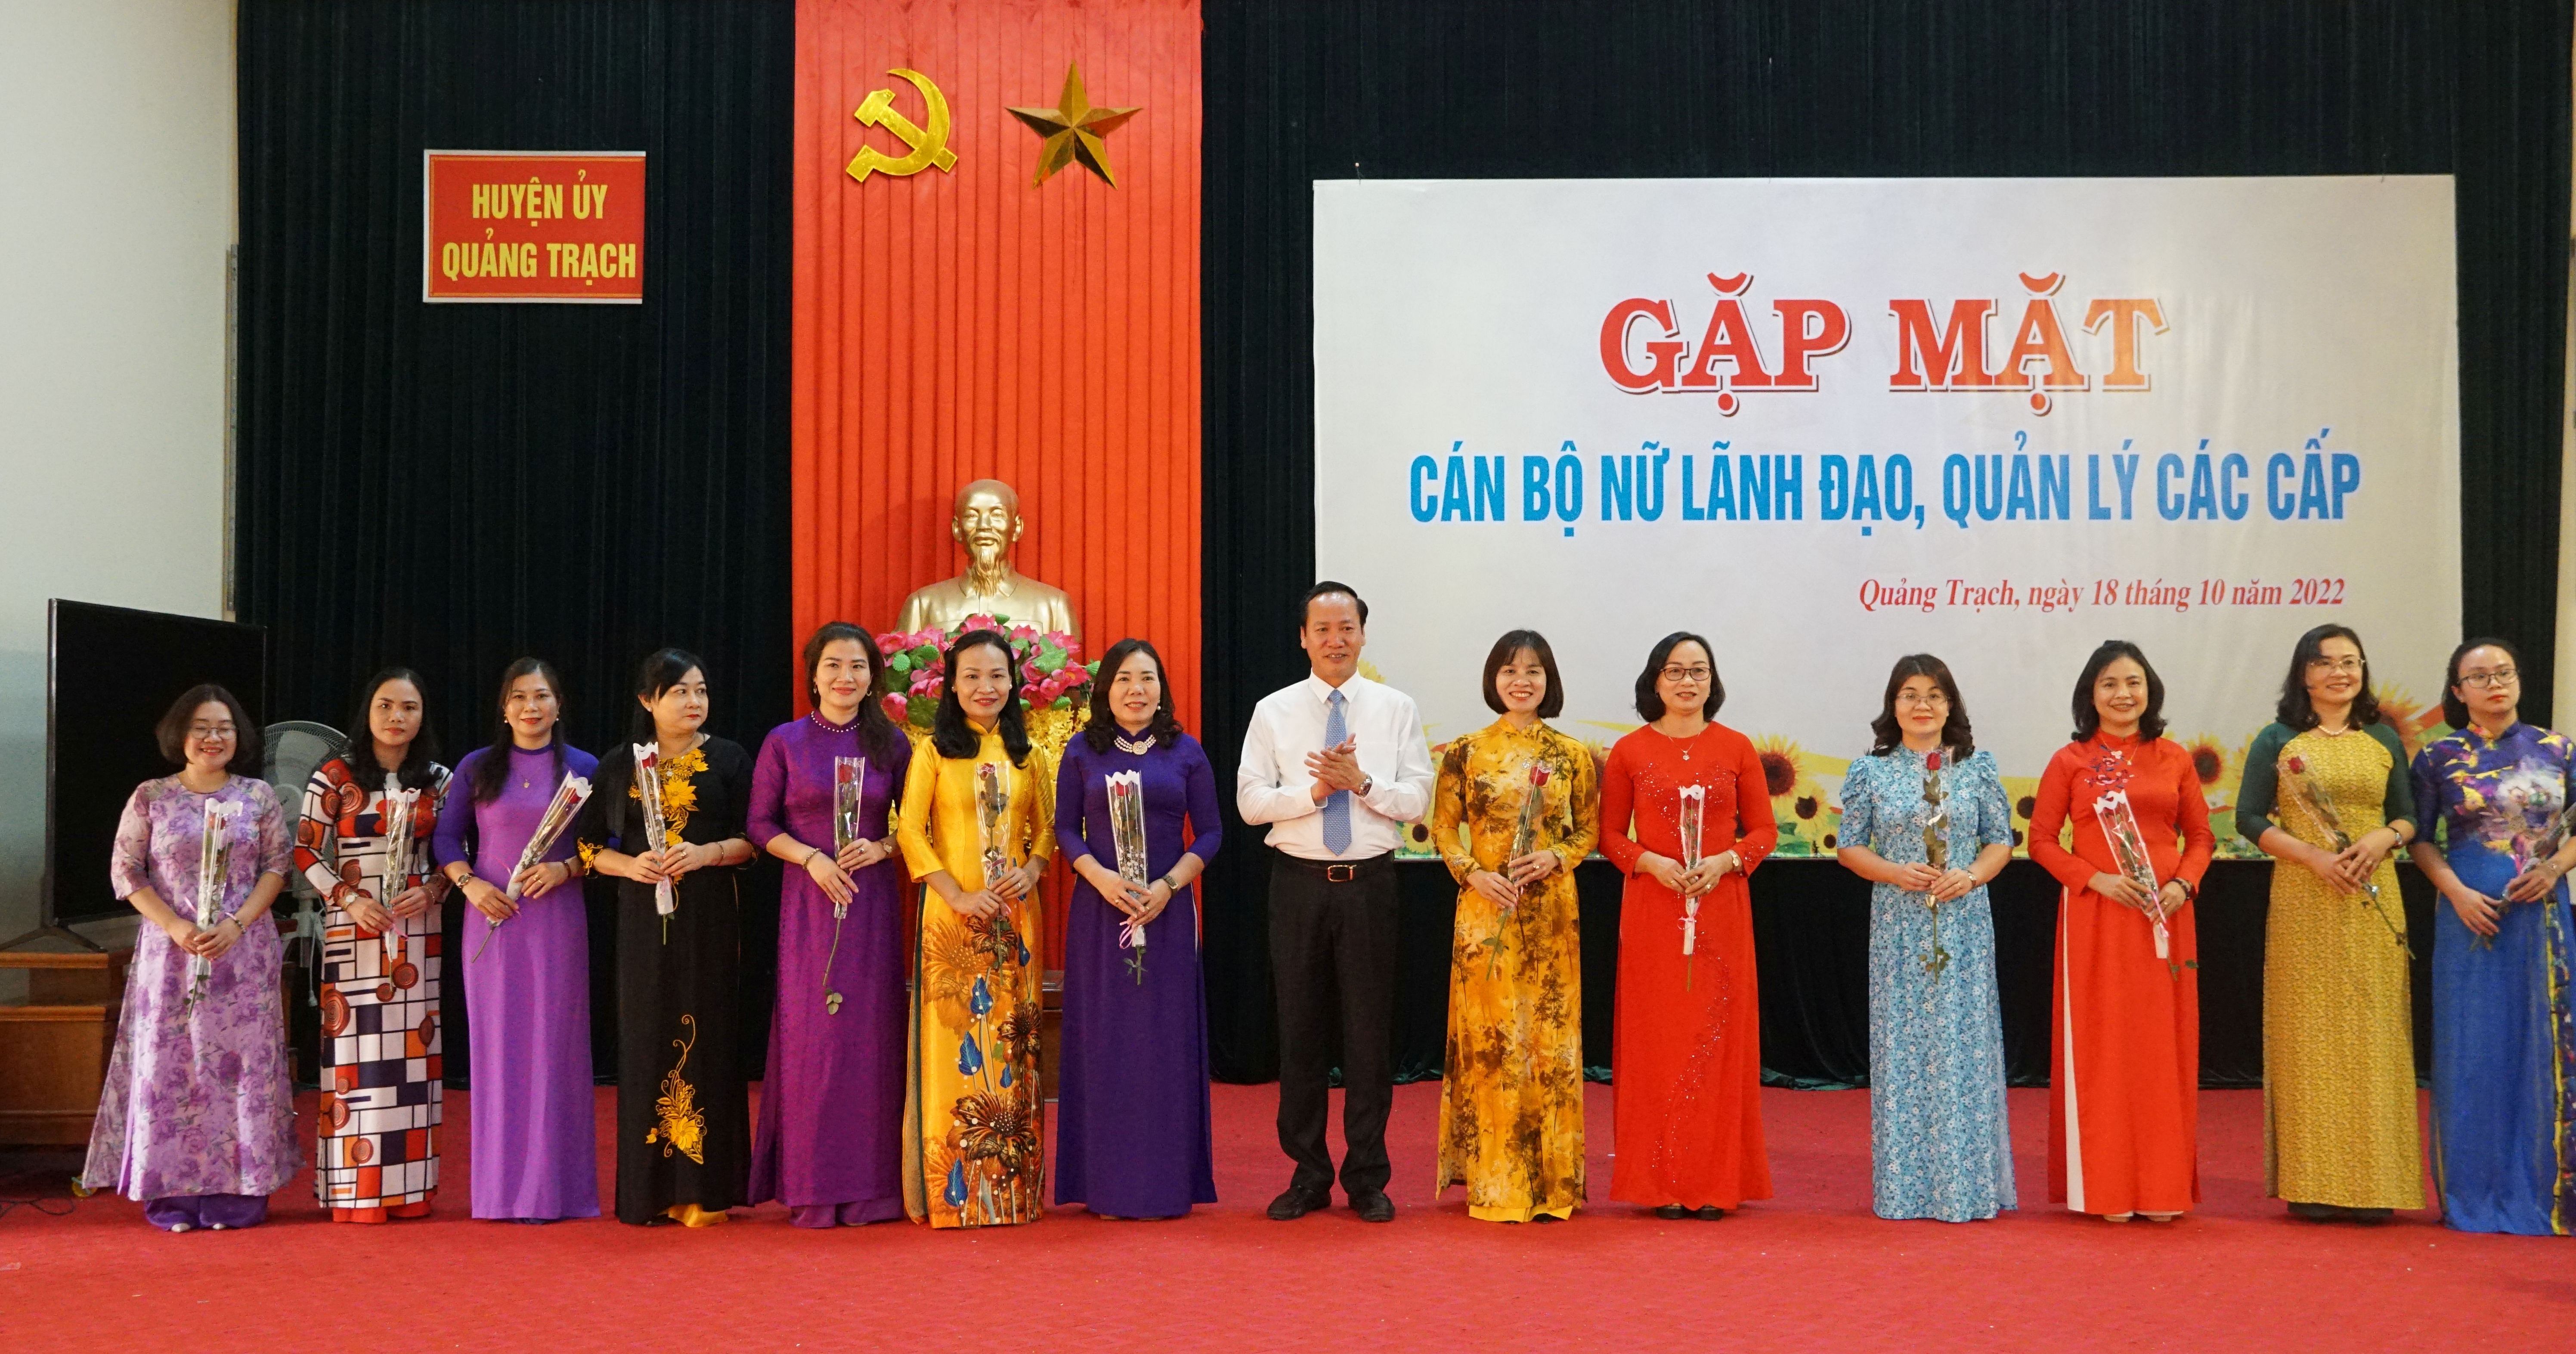 Đồng chí Bí thư Huyện ủy Quảng Trạch Nguyễn Xuân Đạt tặng hoa chúc mừng đội ngũ cán bộ lãnh đạo, quản lý thuộc diện Ban Thường vụ Huyện ủy quản lý.